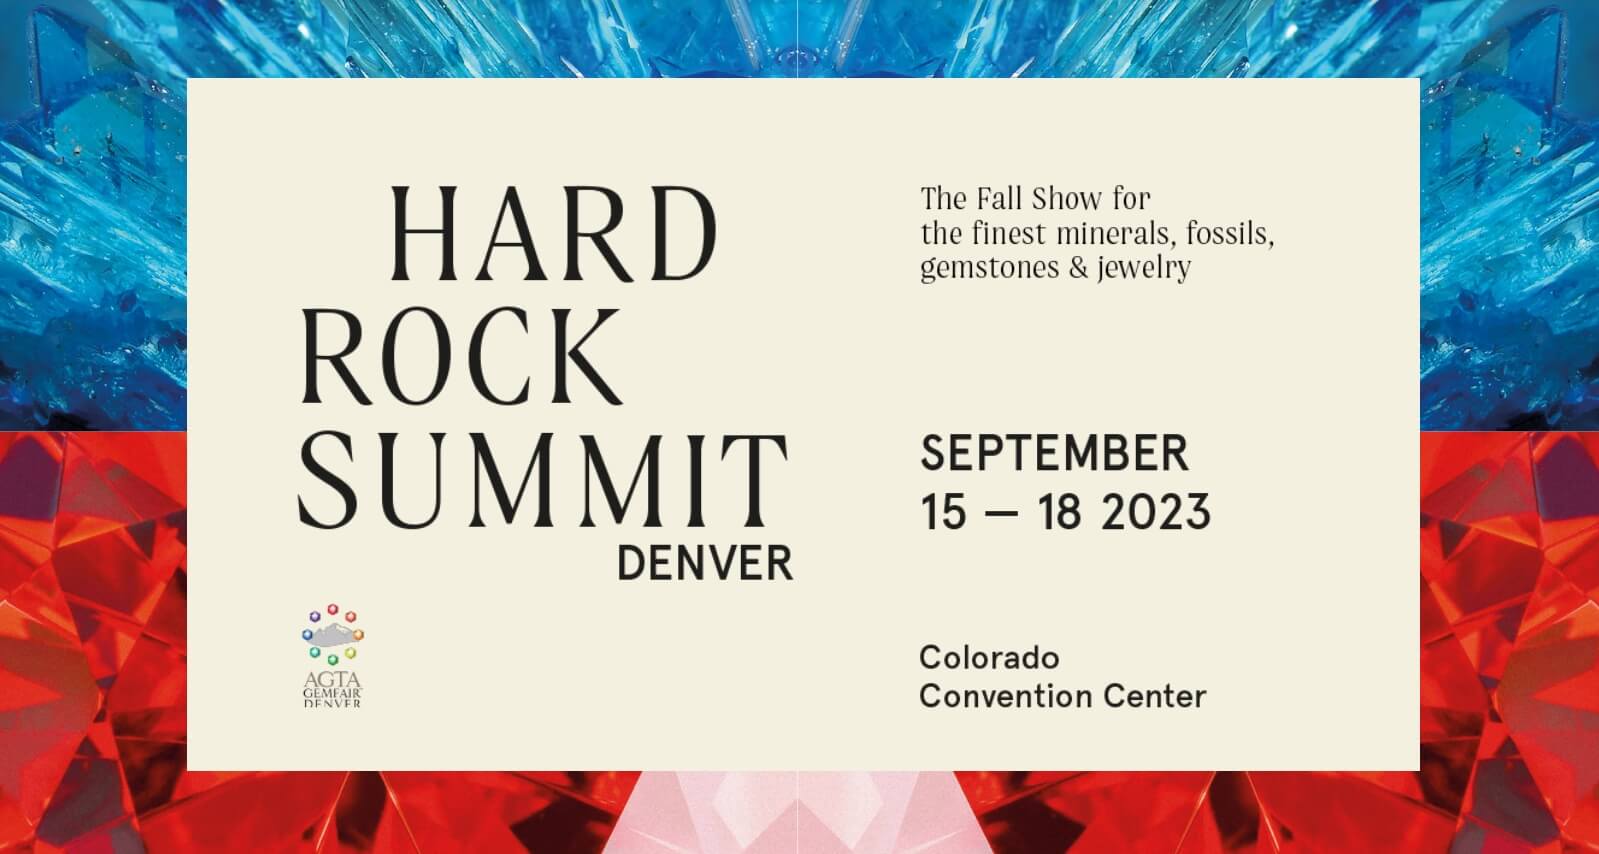 HardRock Summit Denver